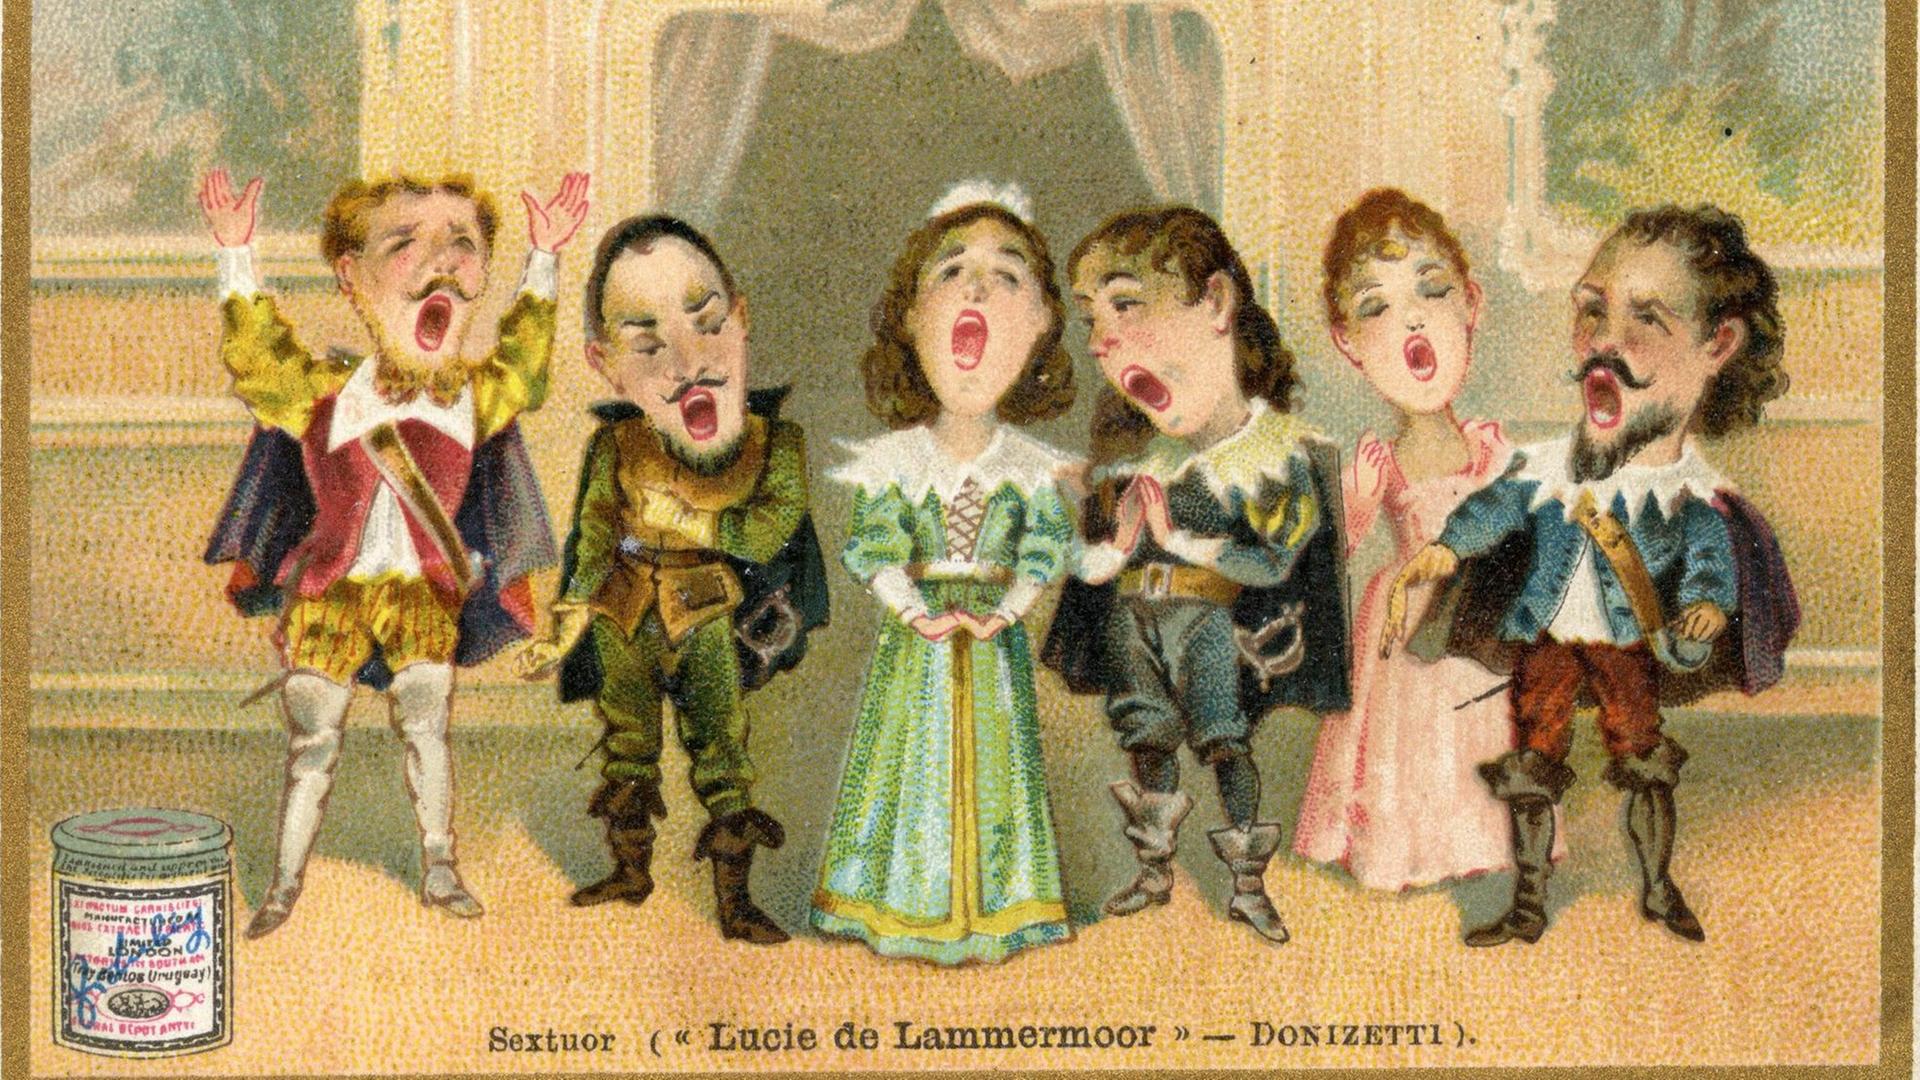 Bunte Illustration mit sechs Sängerinnen und Sängern in historischen Kostümen, die Münder sind weit geöffnet, die Männer tragen Spitzbärte, im Hintergrund ein Vorhang.